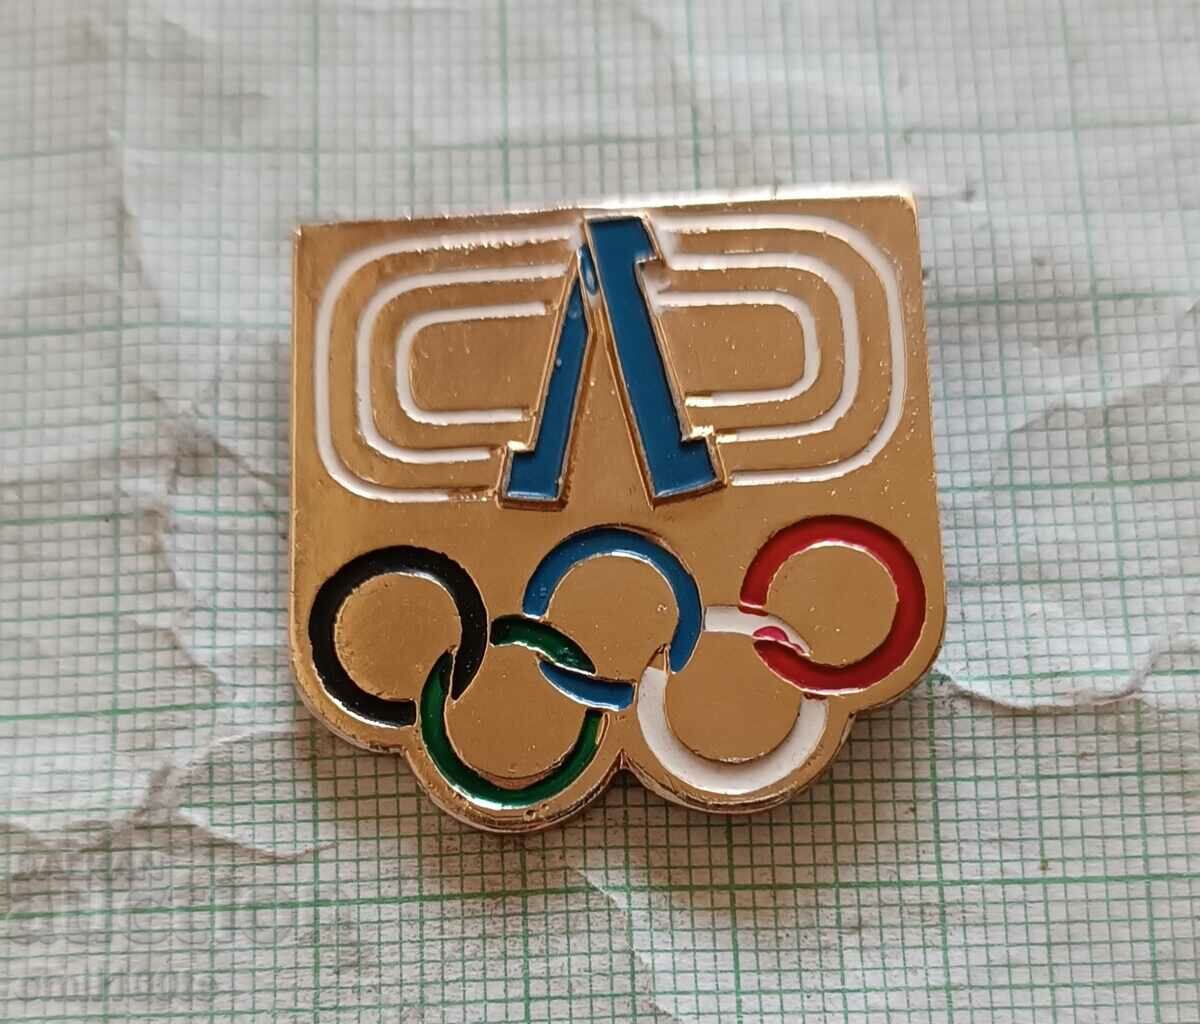 Σήμα - Ολυμπιακοί δακτύλιοι